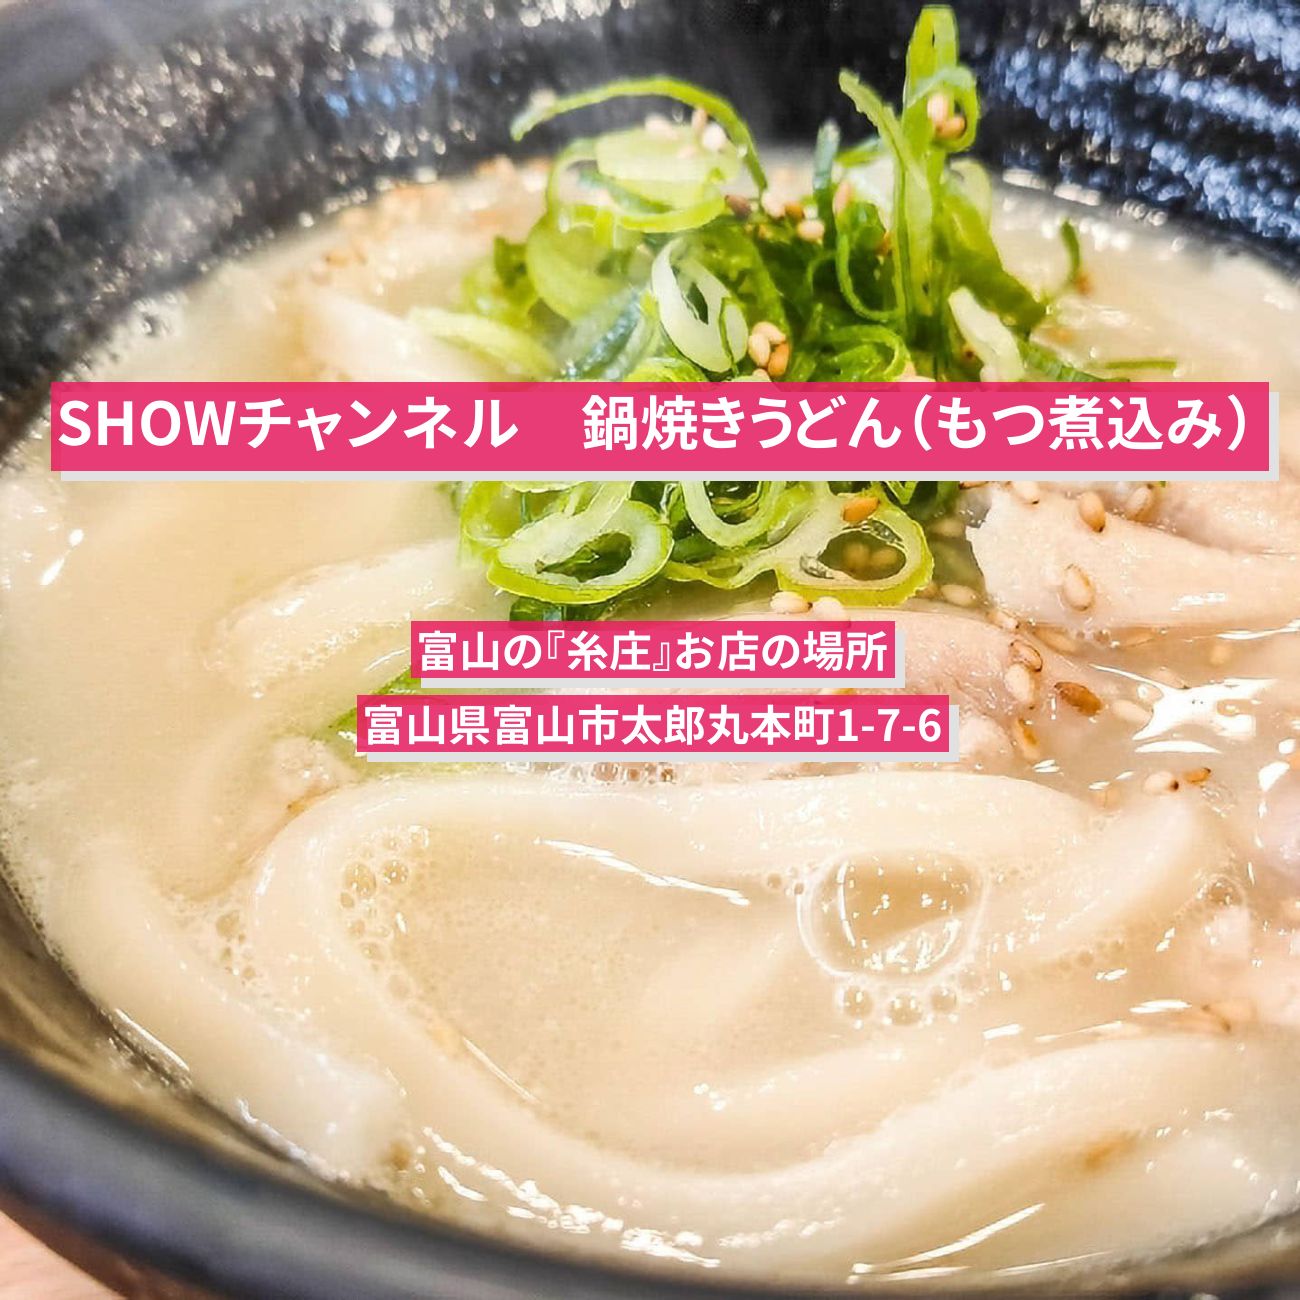 【SHOWチャンネル】もつ煮込みうどん『糸庄』富山のお店の場所